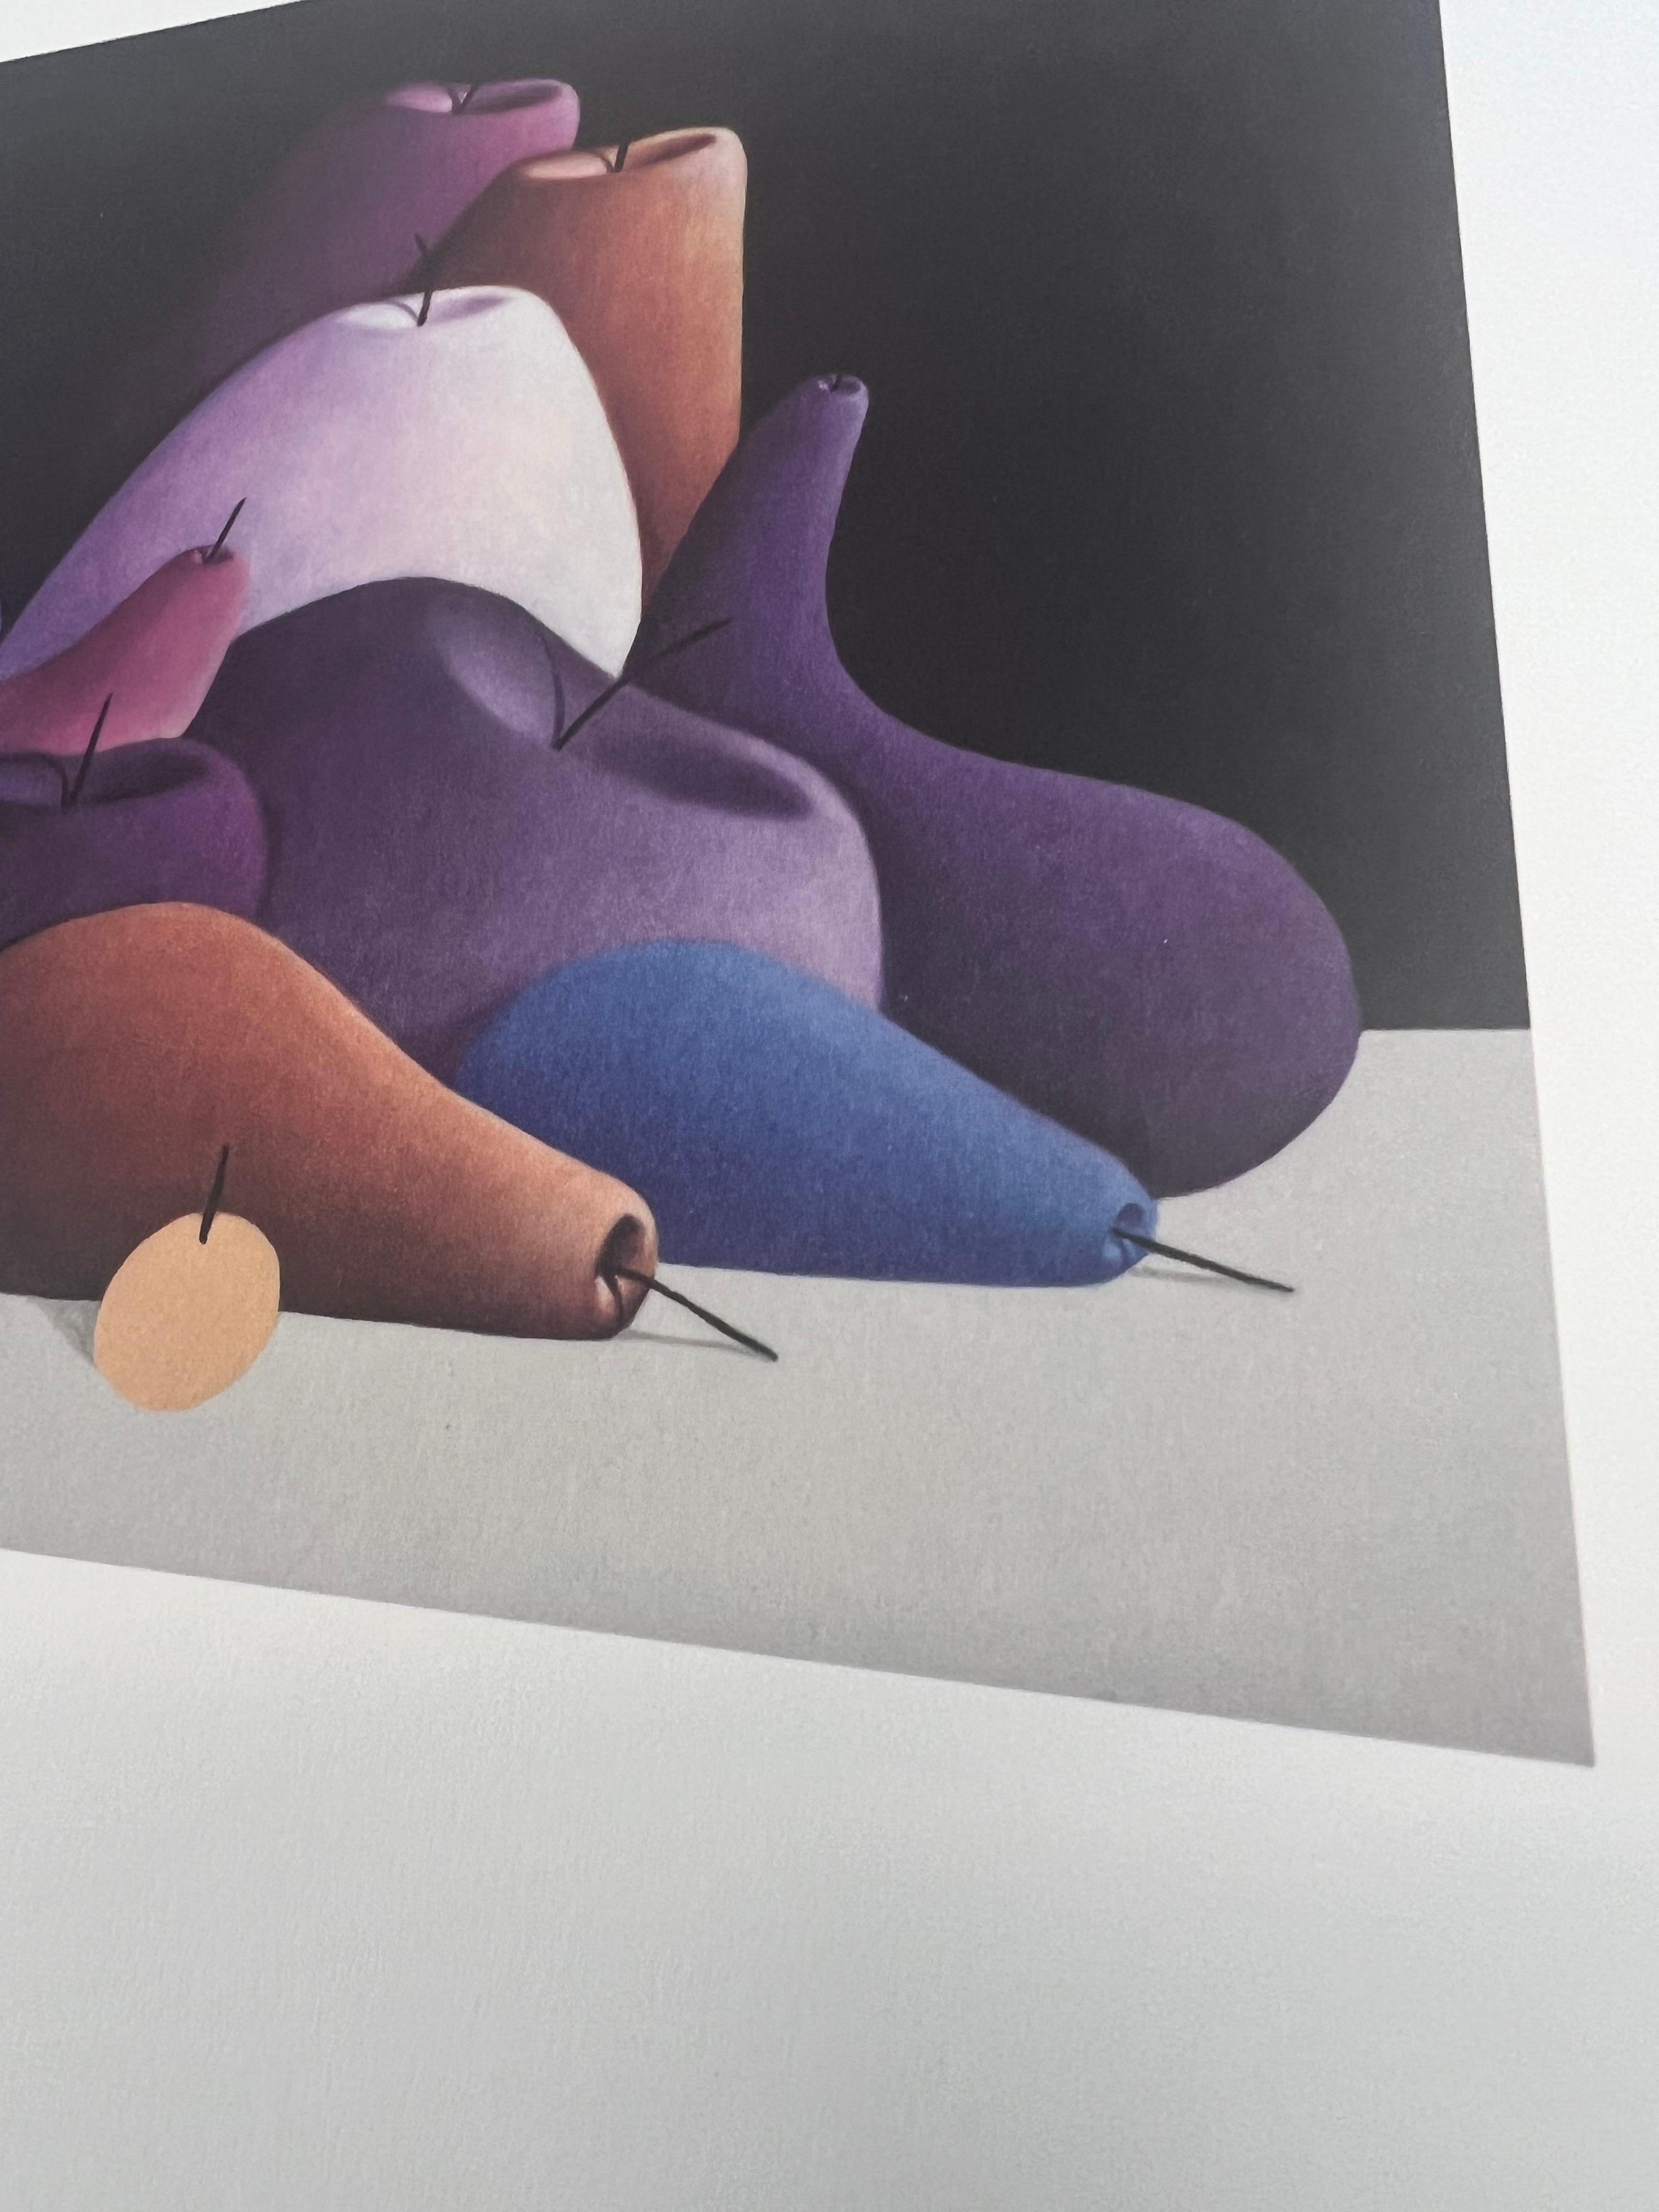 NICOLAS PARTY
NATURE MORTE (BLEU), 2023
Impression offset en 4 couleurs sur papier mat épais.
30 × 30 cm
Edition de 100

Produit par le MUSEUM FRIEDER BURDA.